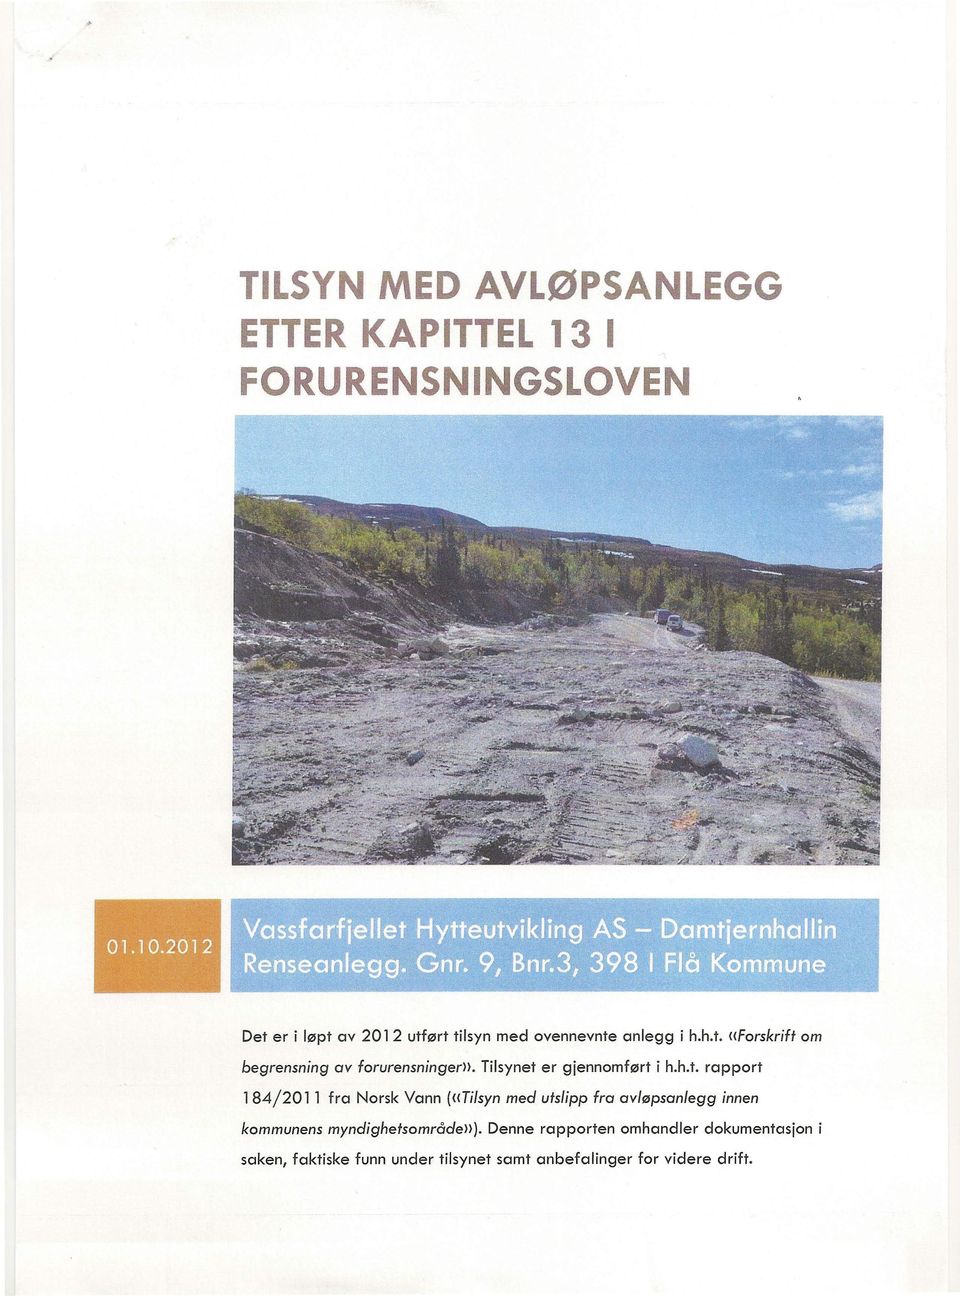 184/2011 Tilsynet er gjennomført i h.h.t. rapport fra Norsk Vann ((Tilsyn med utslipp fra avløpsanlegg kommunens myndighetsområde»).